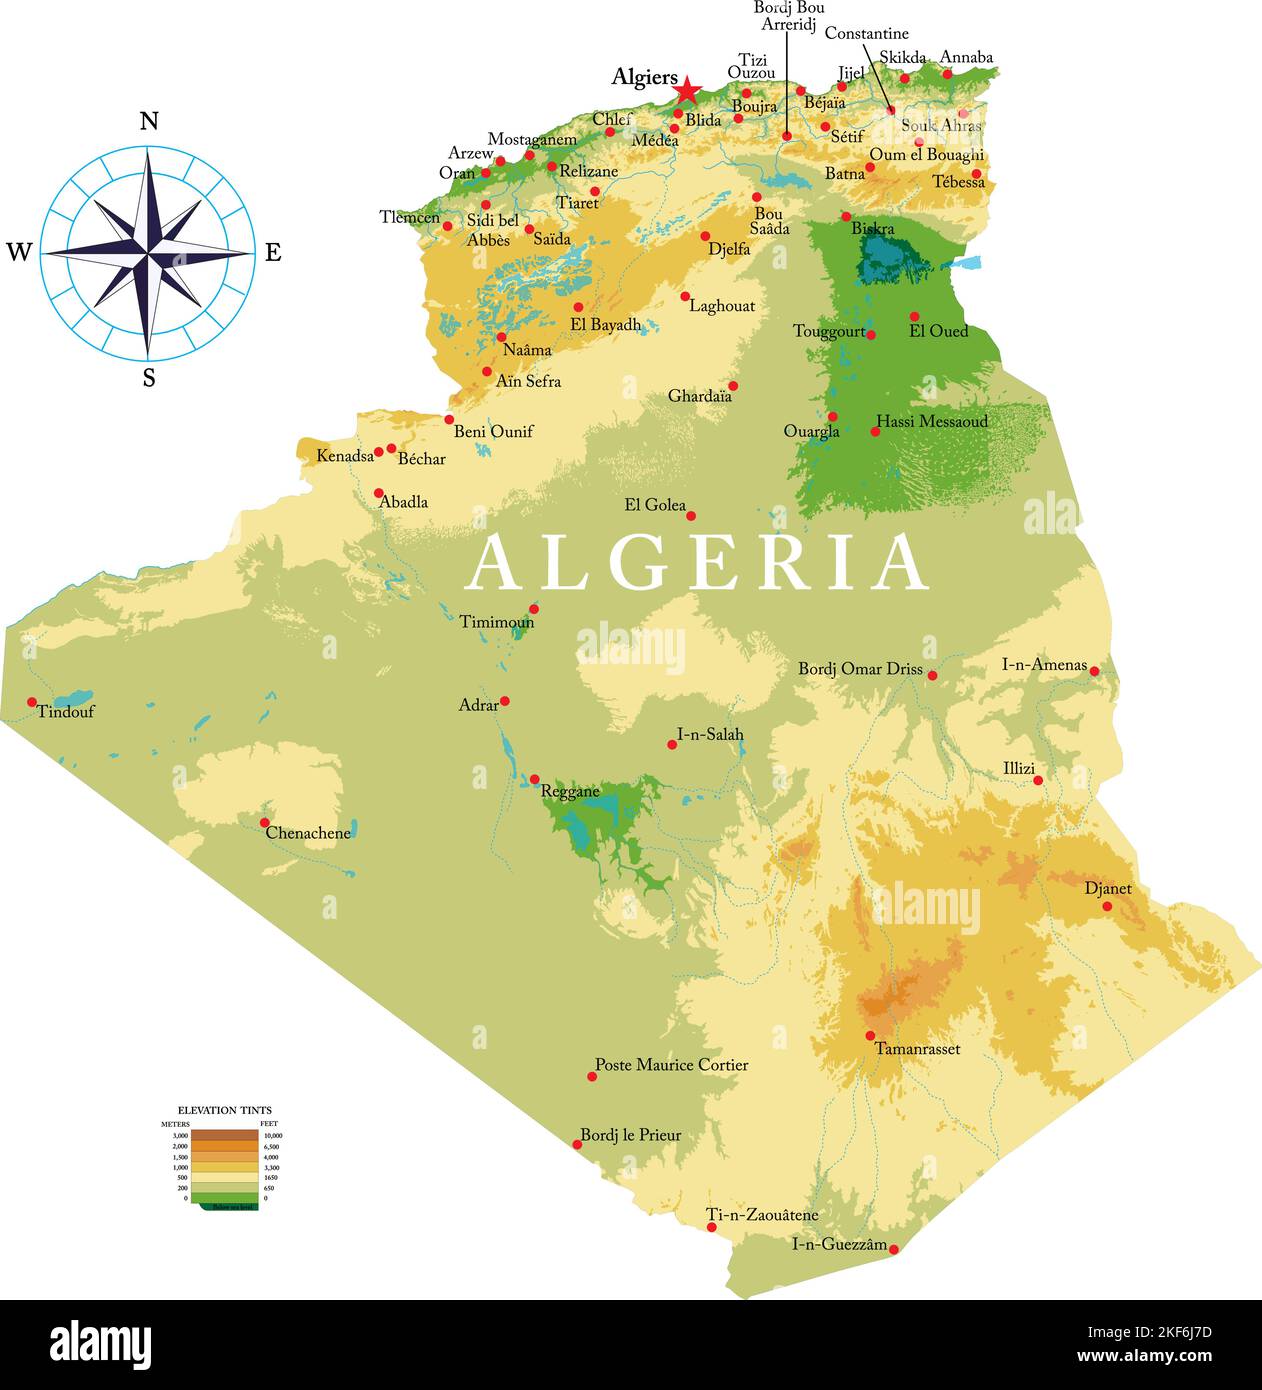 Mappa fisica molto dettagliata dell'Algeria in formato vettoriale, con tutte le forme di rilievo, le regioni e le grandi città. Illustrazione Vettoriale